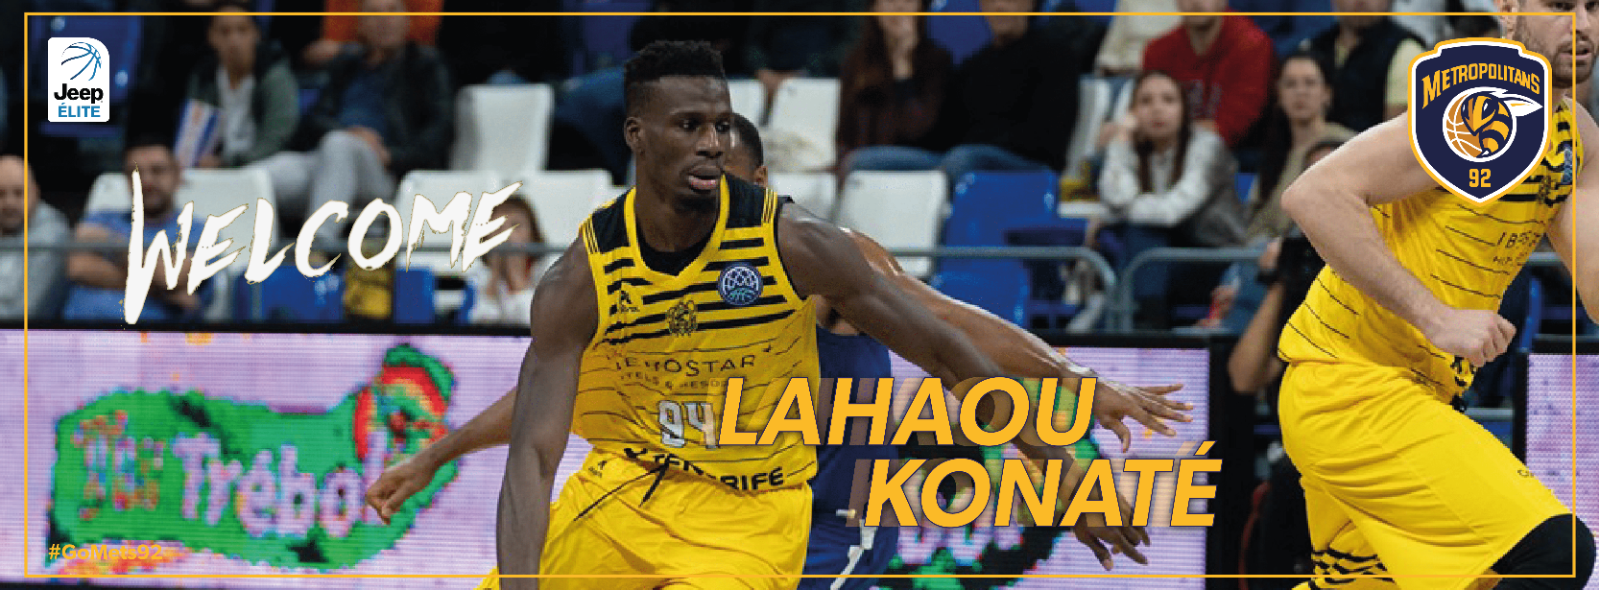 Recrutement - Lahaou Konaté rejoint l’effectif des Metropolitans 92 pour les 4 prochaines saisons ! 